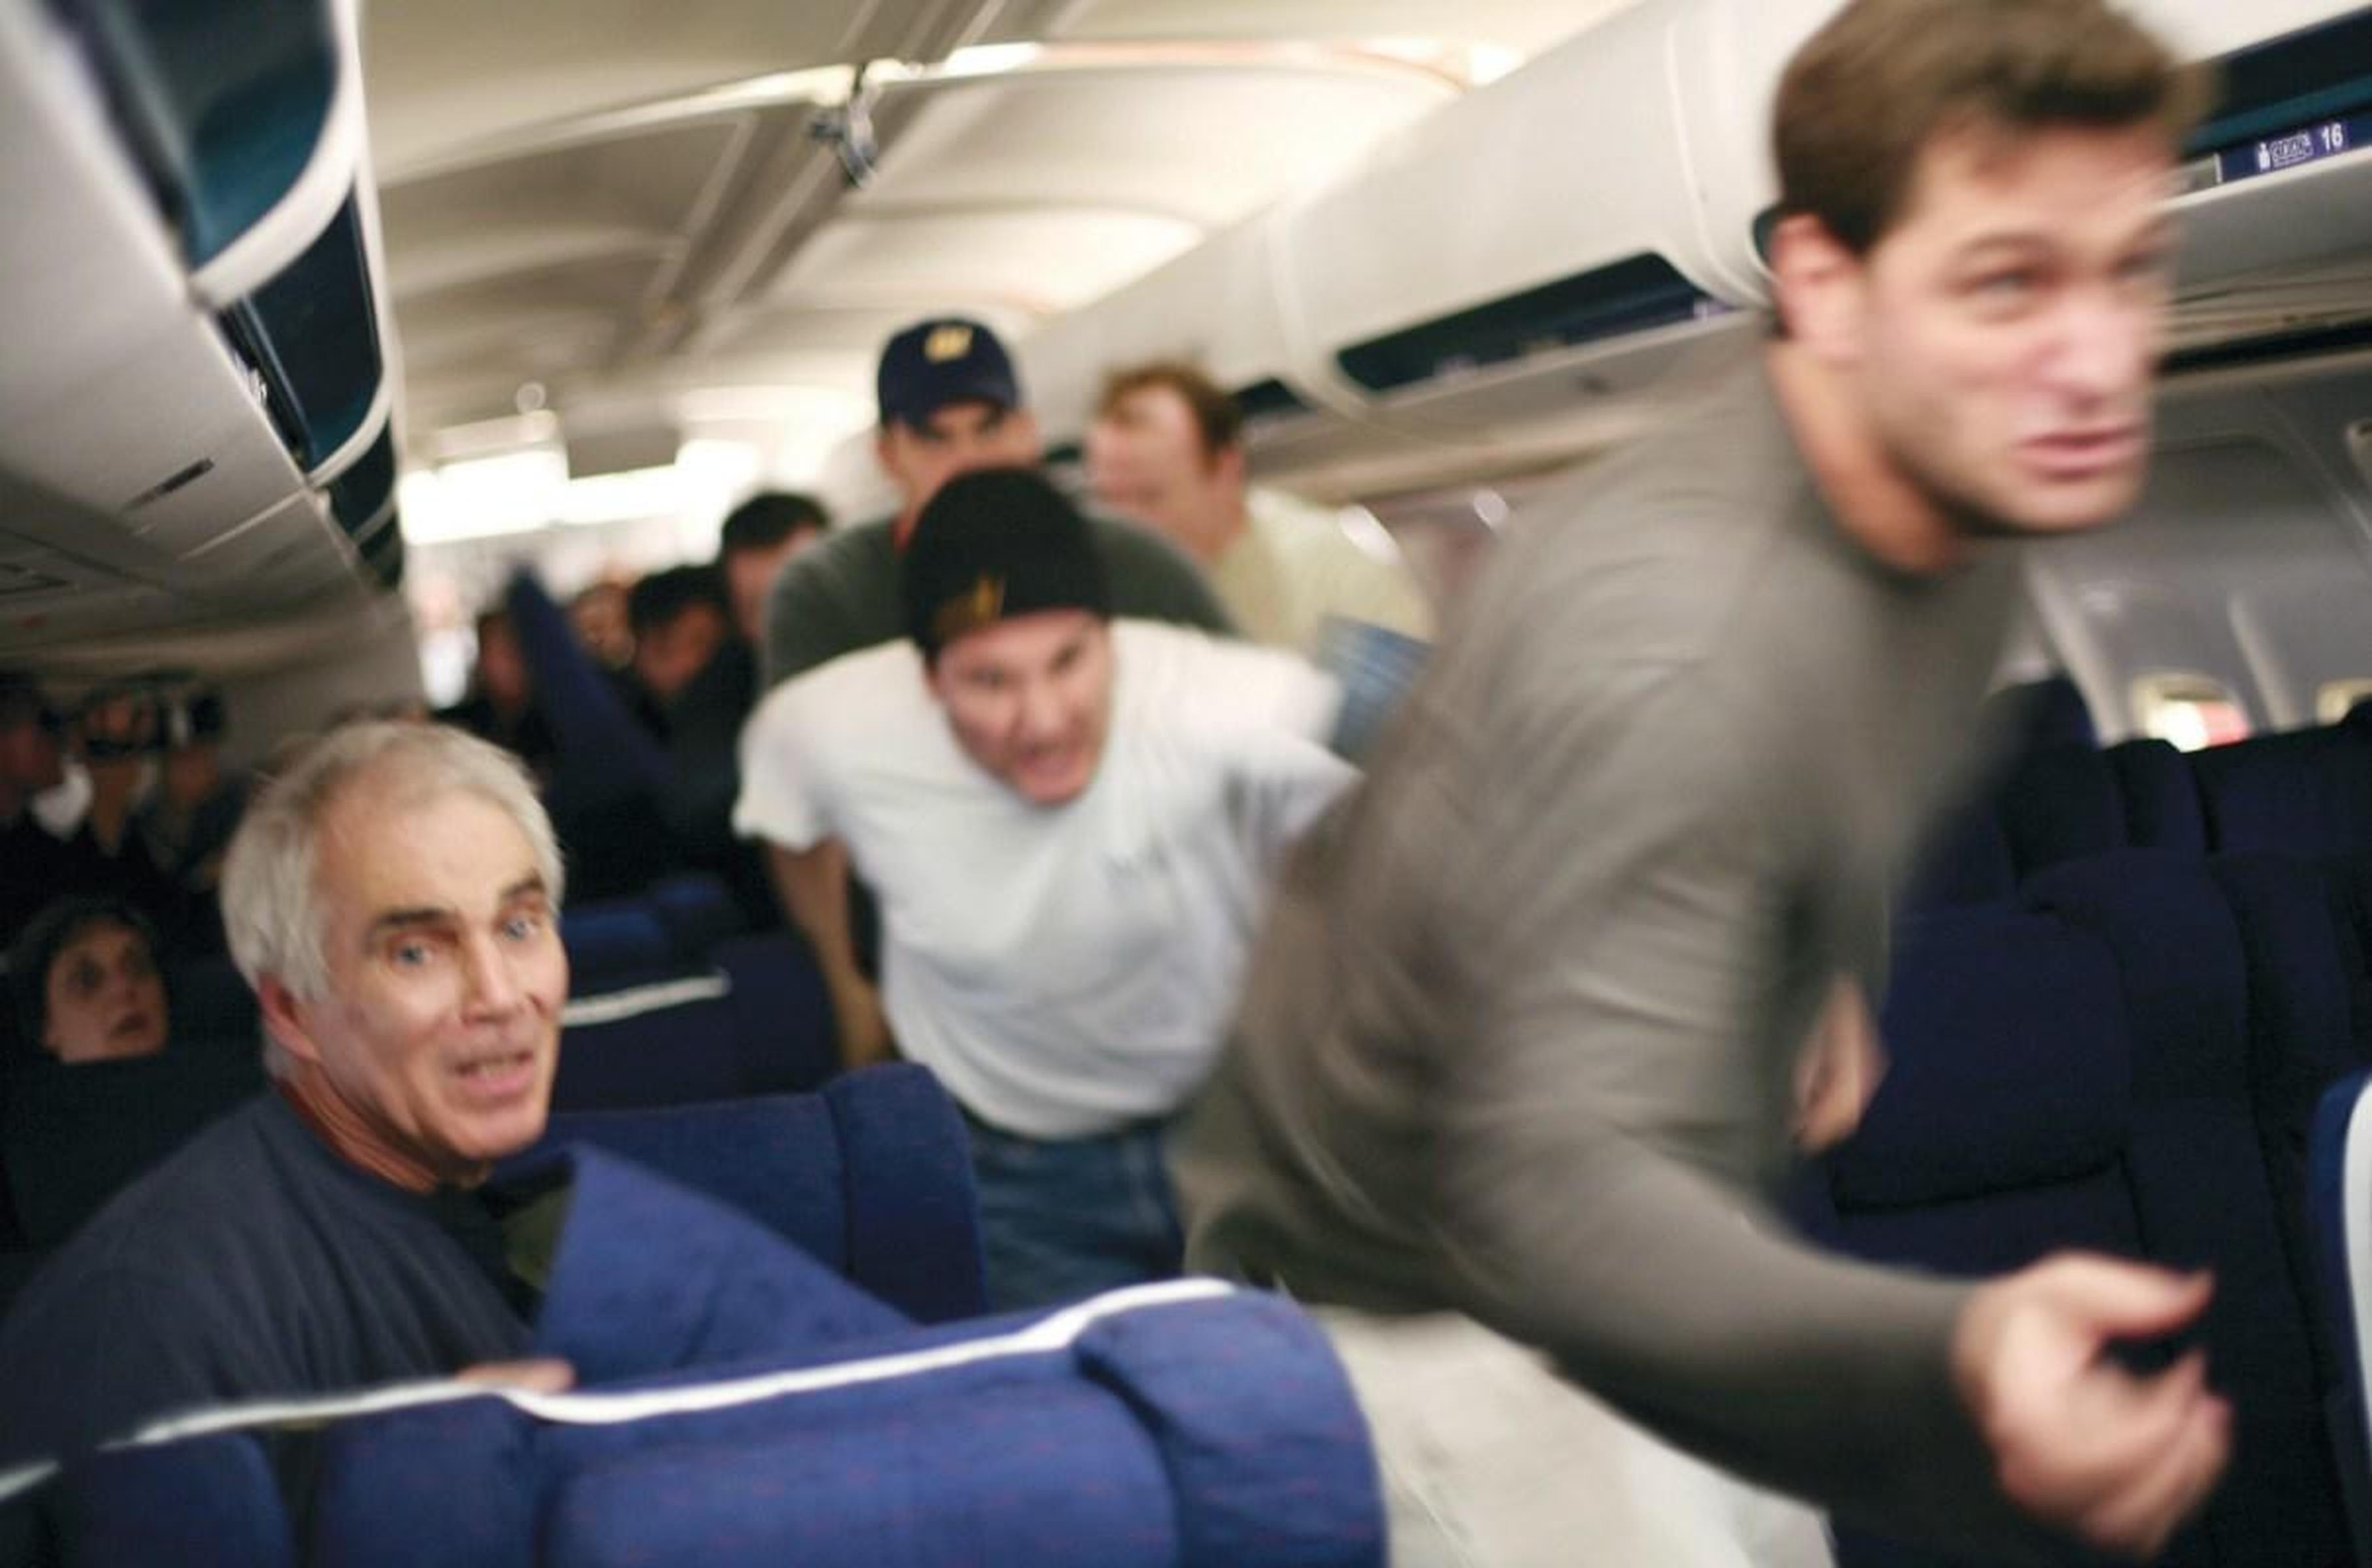 Top7：《颤栗航班93》(2006)导演：保罗·格林格拉斯 改编自真实事件，93航班航班上的恐怖分子本来打算把飞机用以袭击华盛顿。 然而机上所有乘客和工作人员却一致抗敌，力挽狂澜，以自己的牺牲保住了更多人的性命。